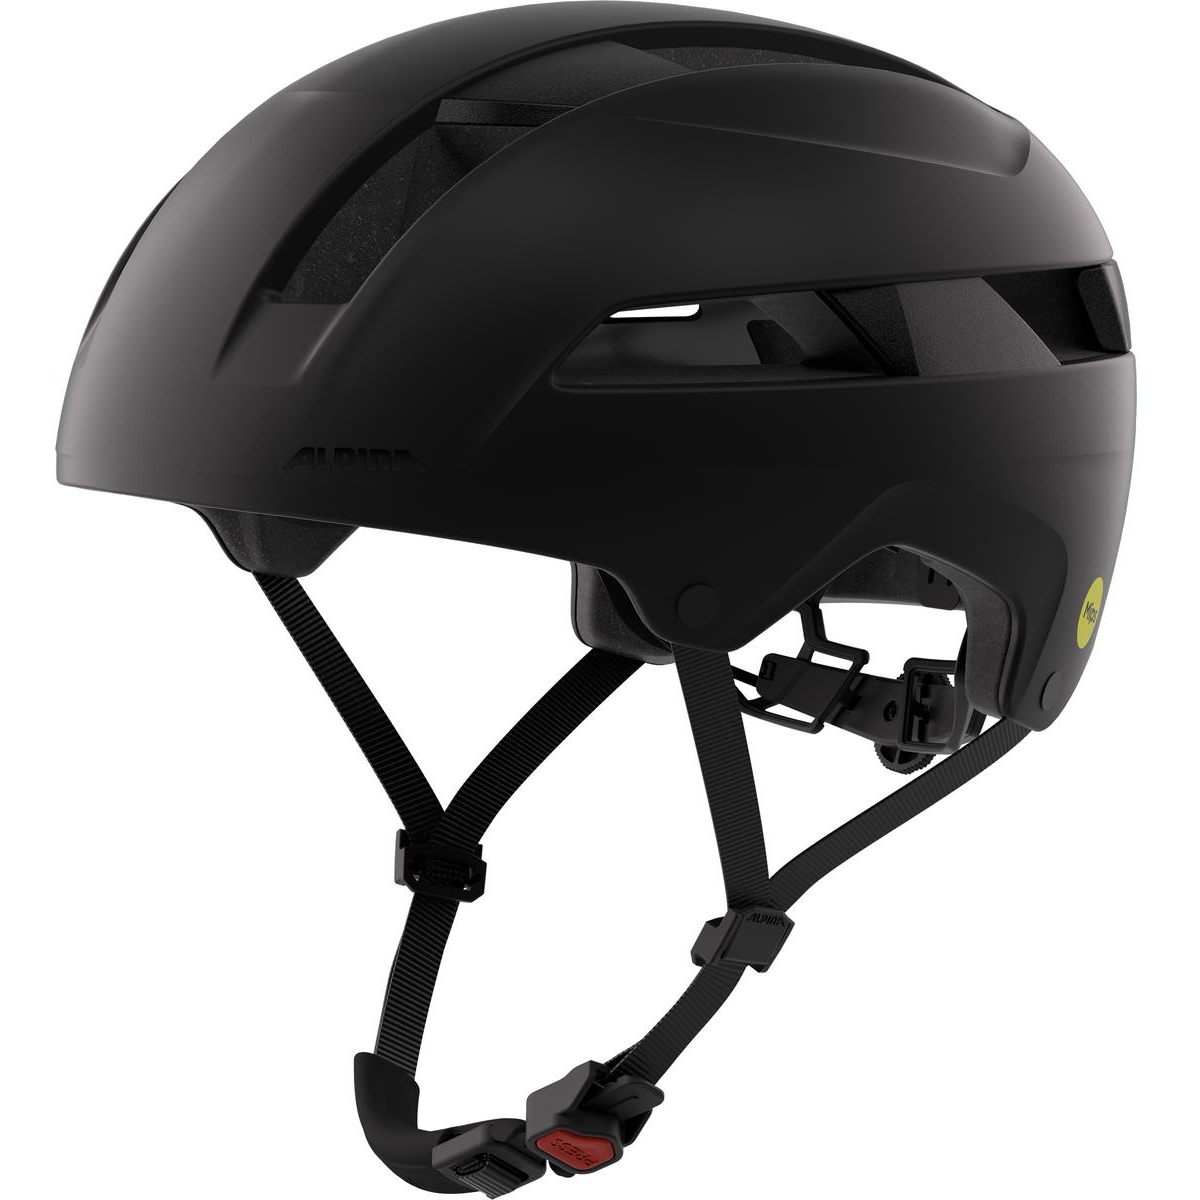 Produktbild von Alpina Bloom MIPS Helm - schwarz matt